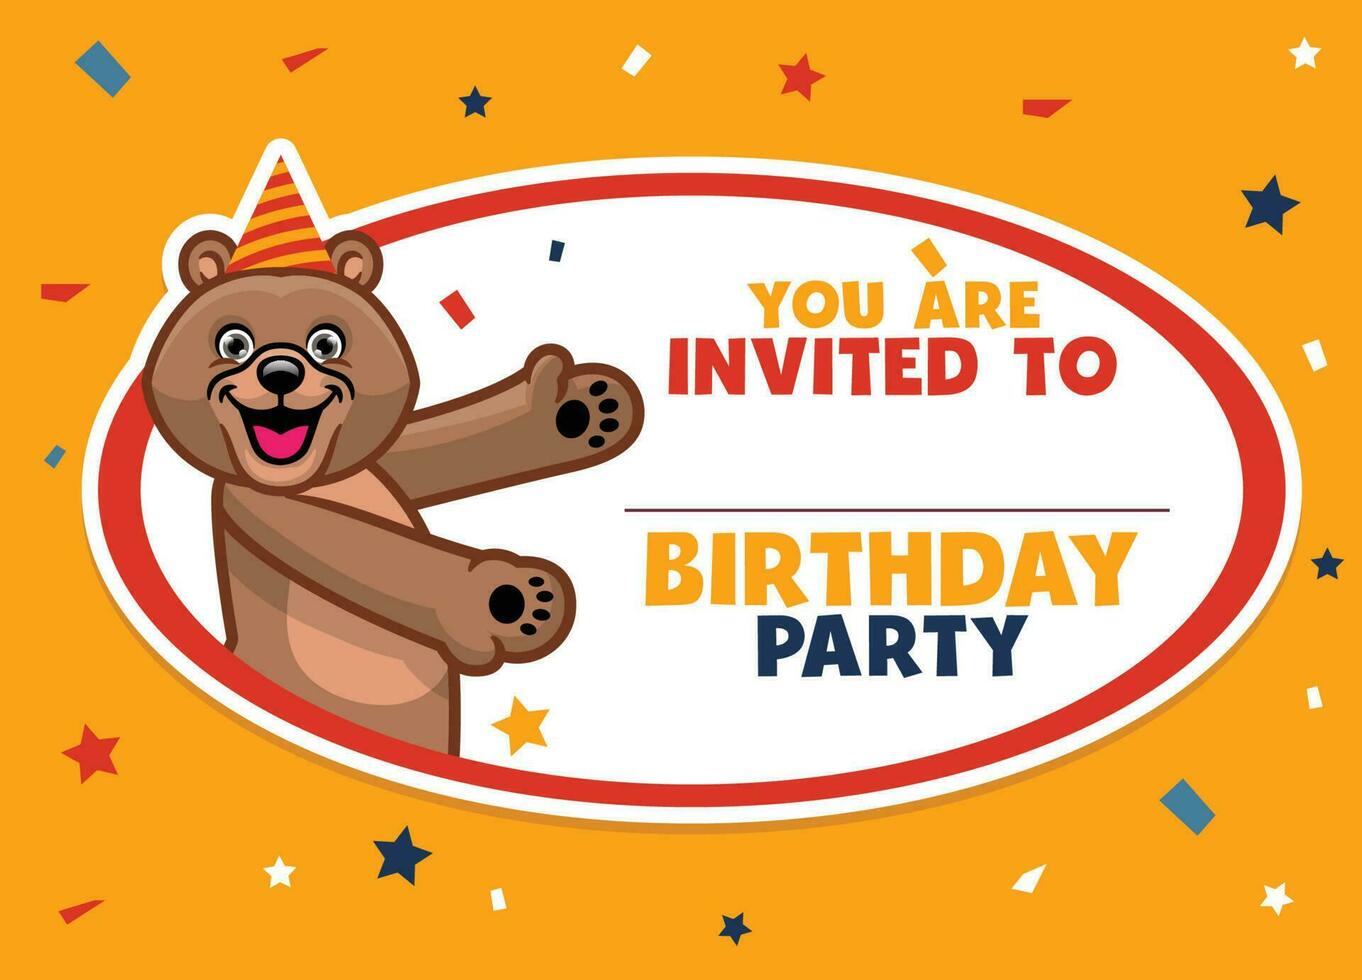 Geburtstag Einladung mit süß braun Bär vektor